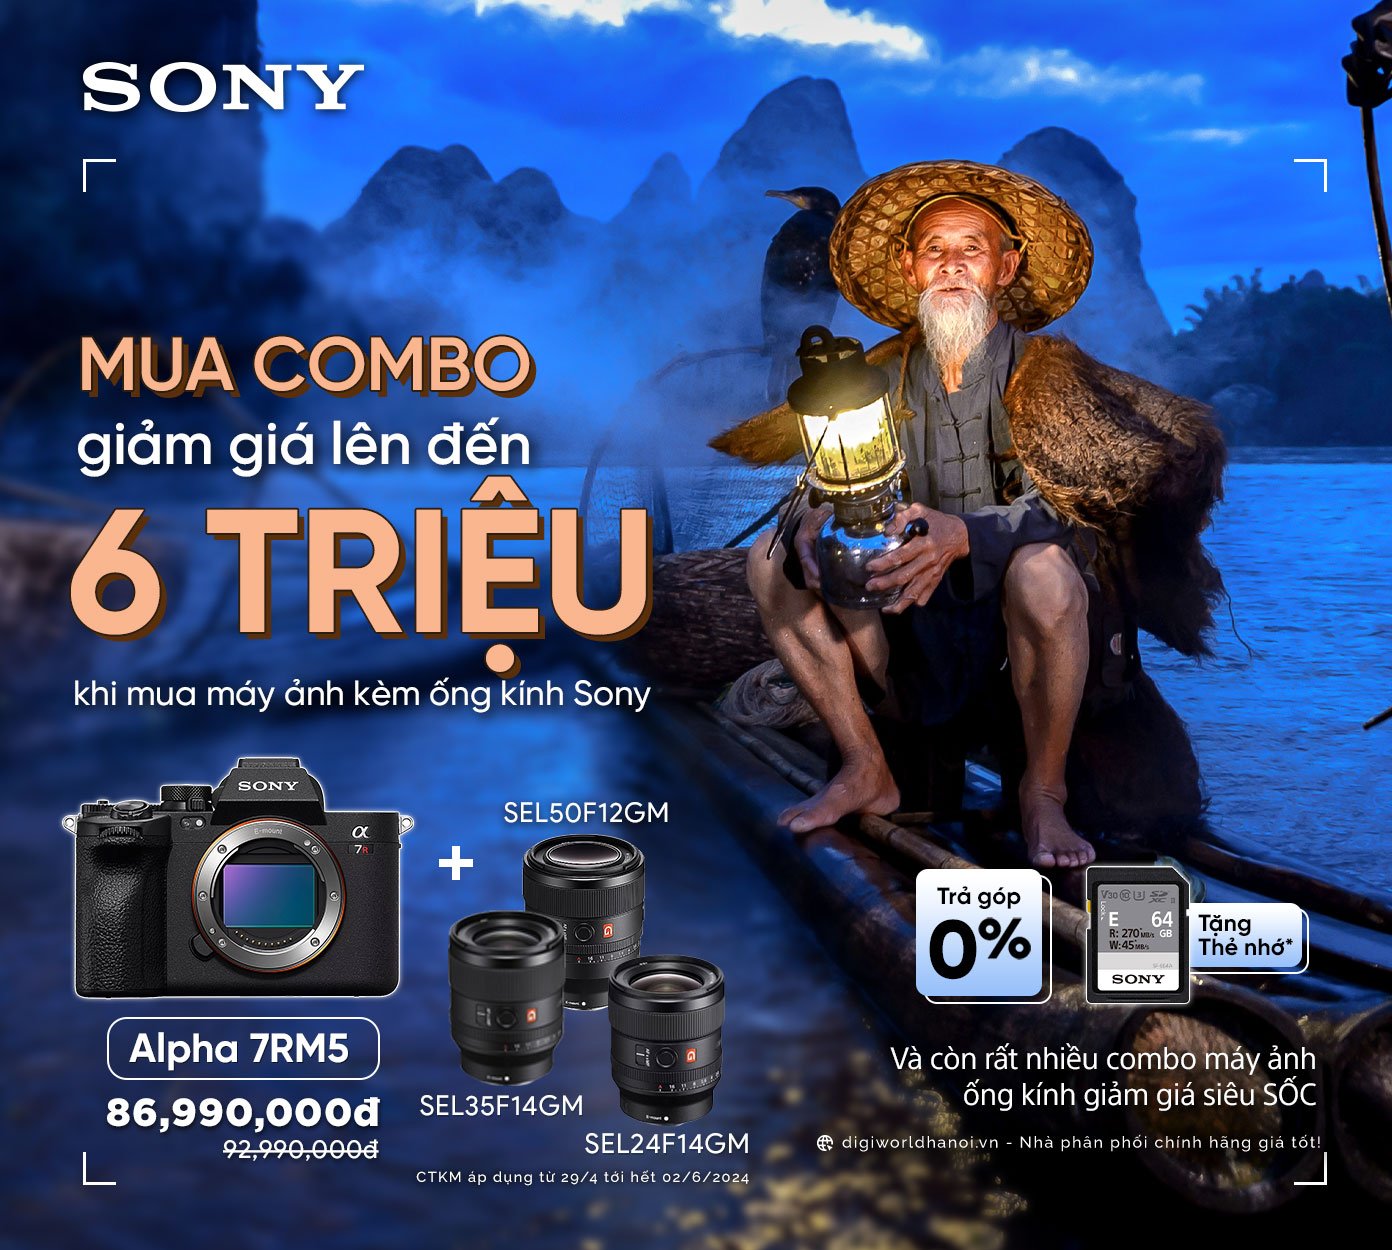 Mua COMBO Máy ảnh và Ống kính Sony Giảm giá tới 6 Triệu!